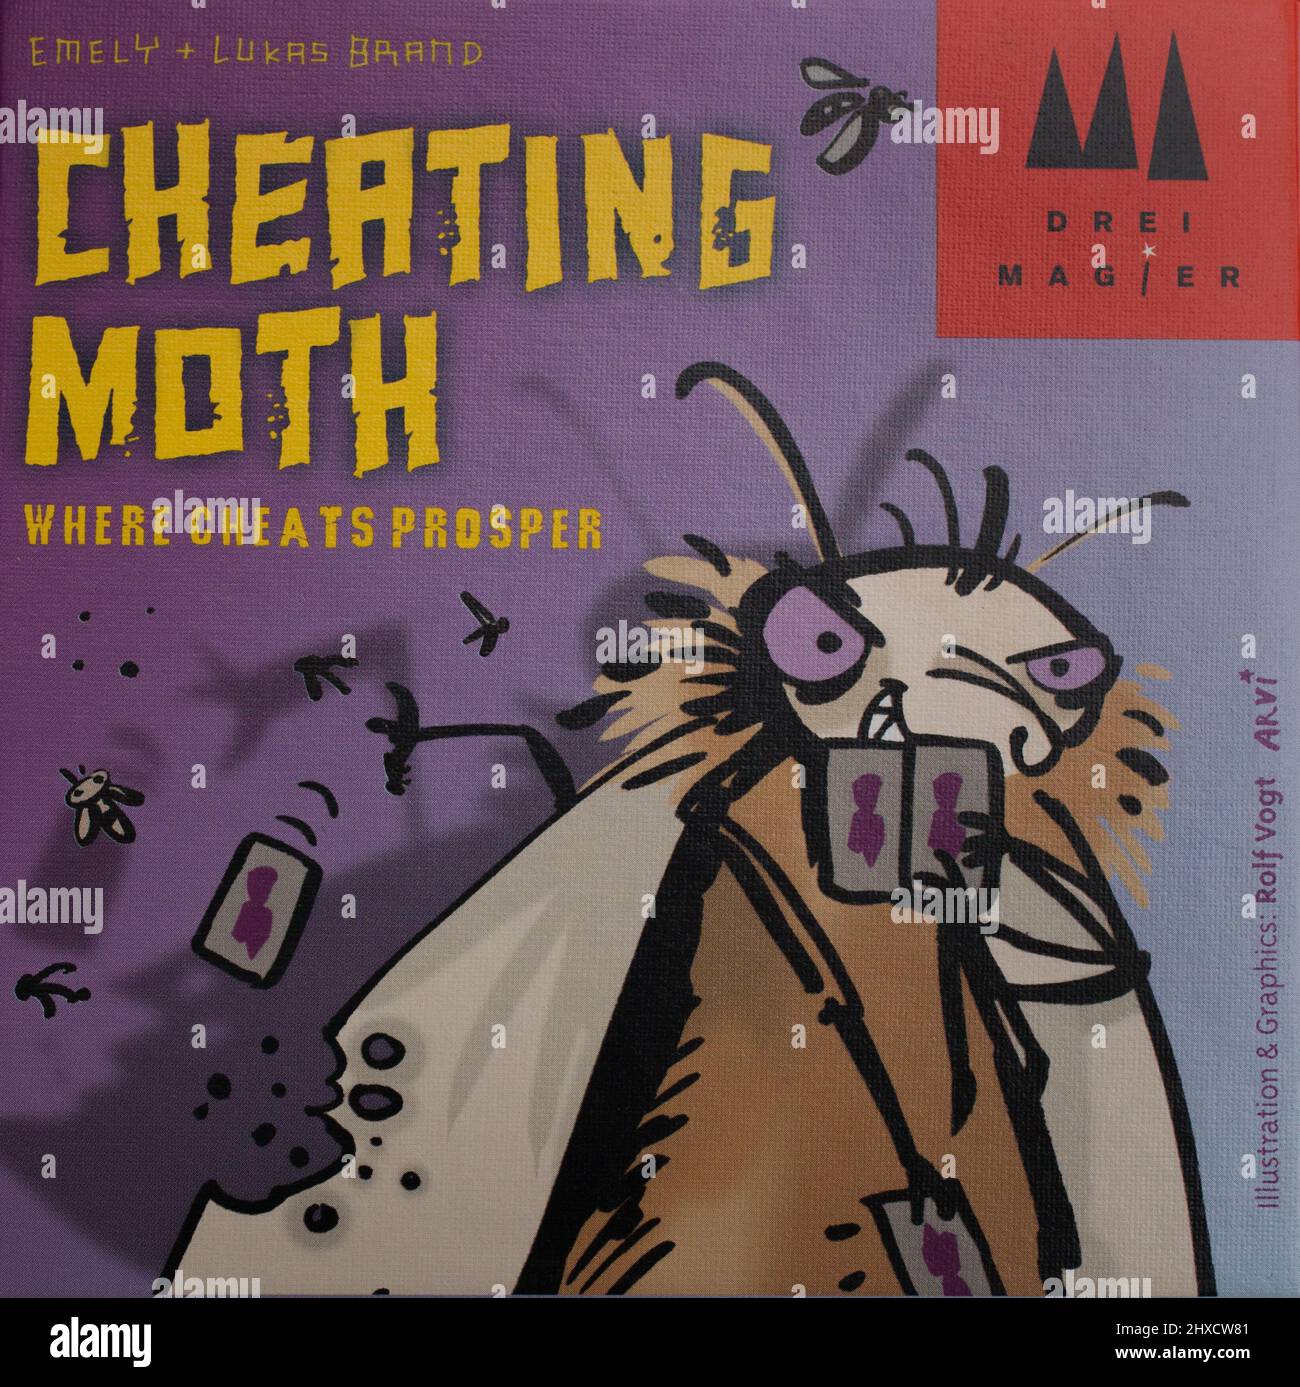 El juego de cartas, Cheating Moth Foto de stock